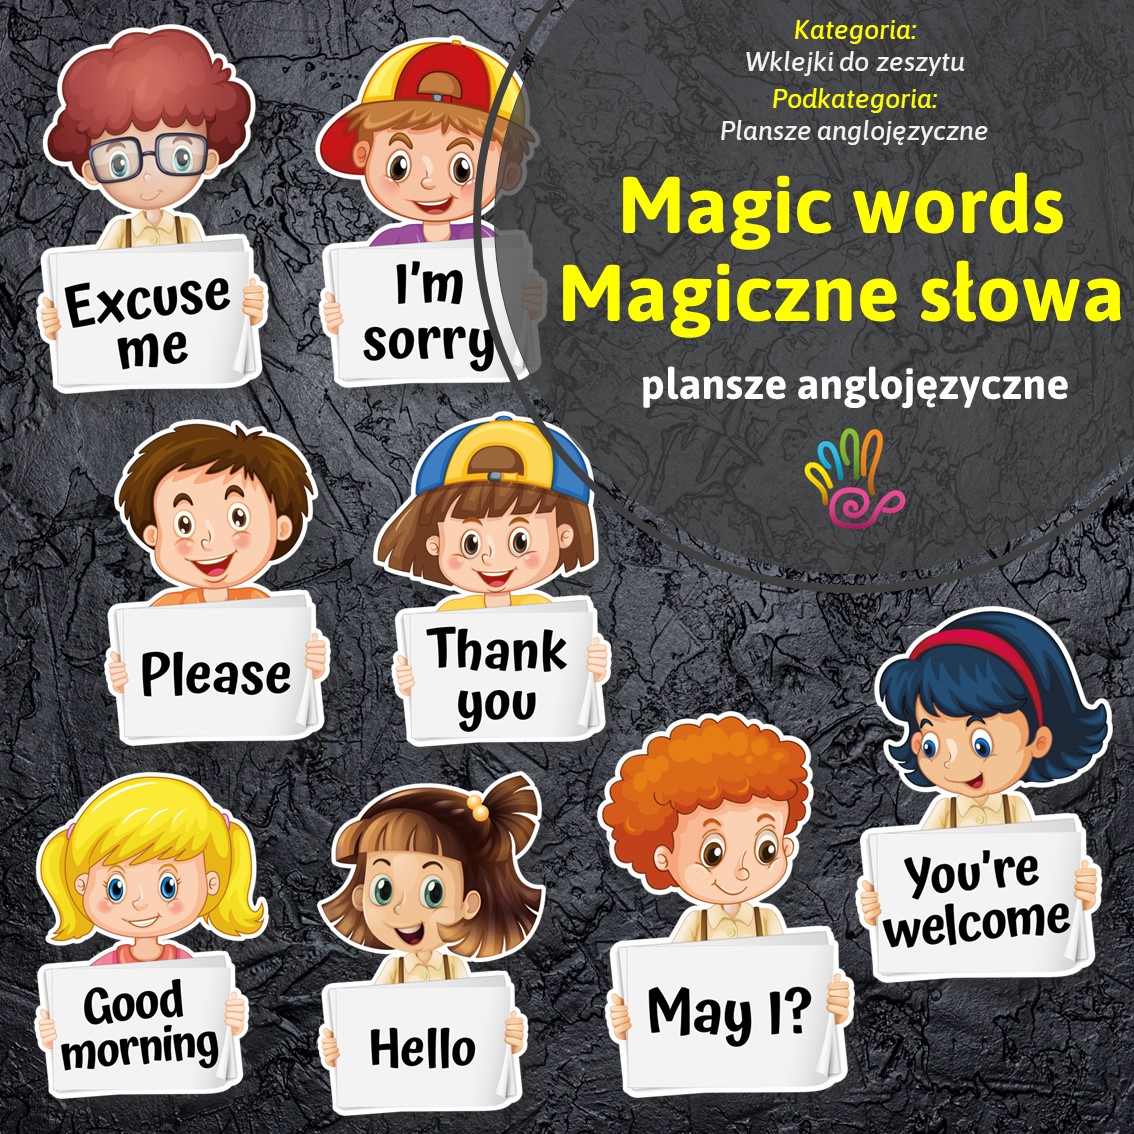 Magic words magiczne słowa plansze anglojęzyczne thank you please i'm sorry pomoce edukacyjne materiały dydaktyczne język angielski przedszkole szkoła podstawowa nauczanie wczesnoszkolne przedszkolne pdf do druku karty pracy gazetka